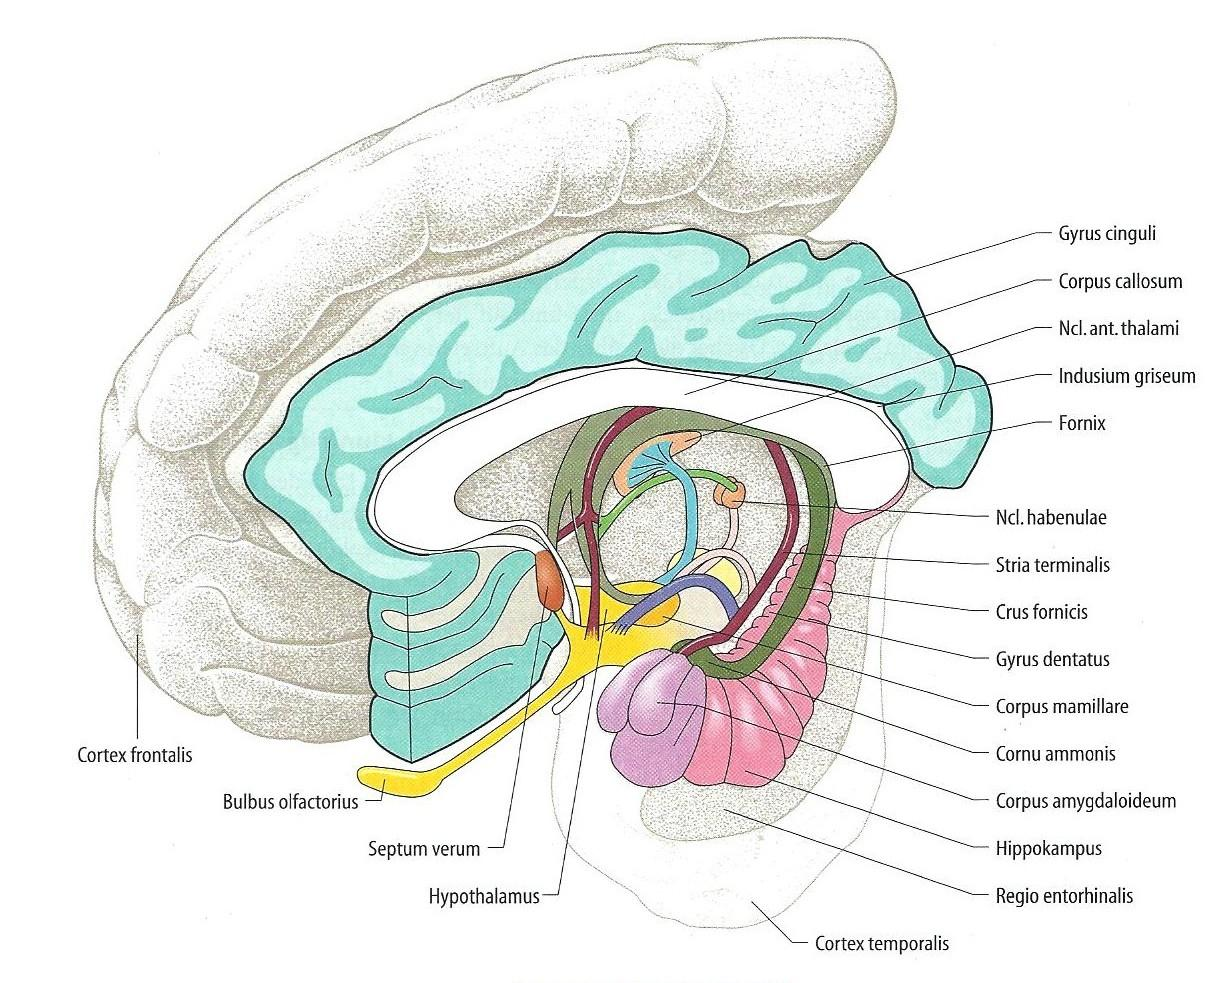 D a s l i m b i s c h e S y s t e m S e i t e 14 limbischen System und Hypothalamus, kann auch dieser dazugezählt werden (Abb. 4) [LANG und LANG, 2008].